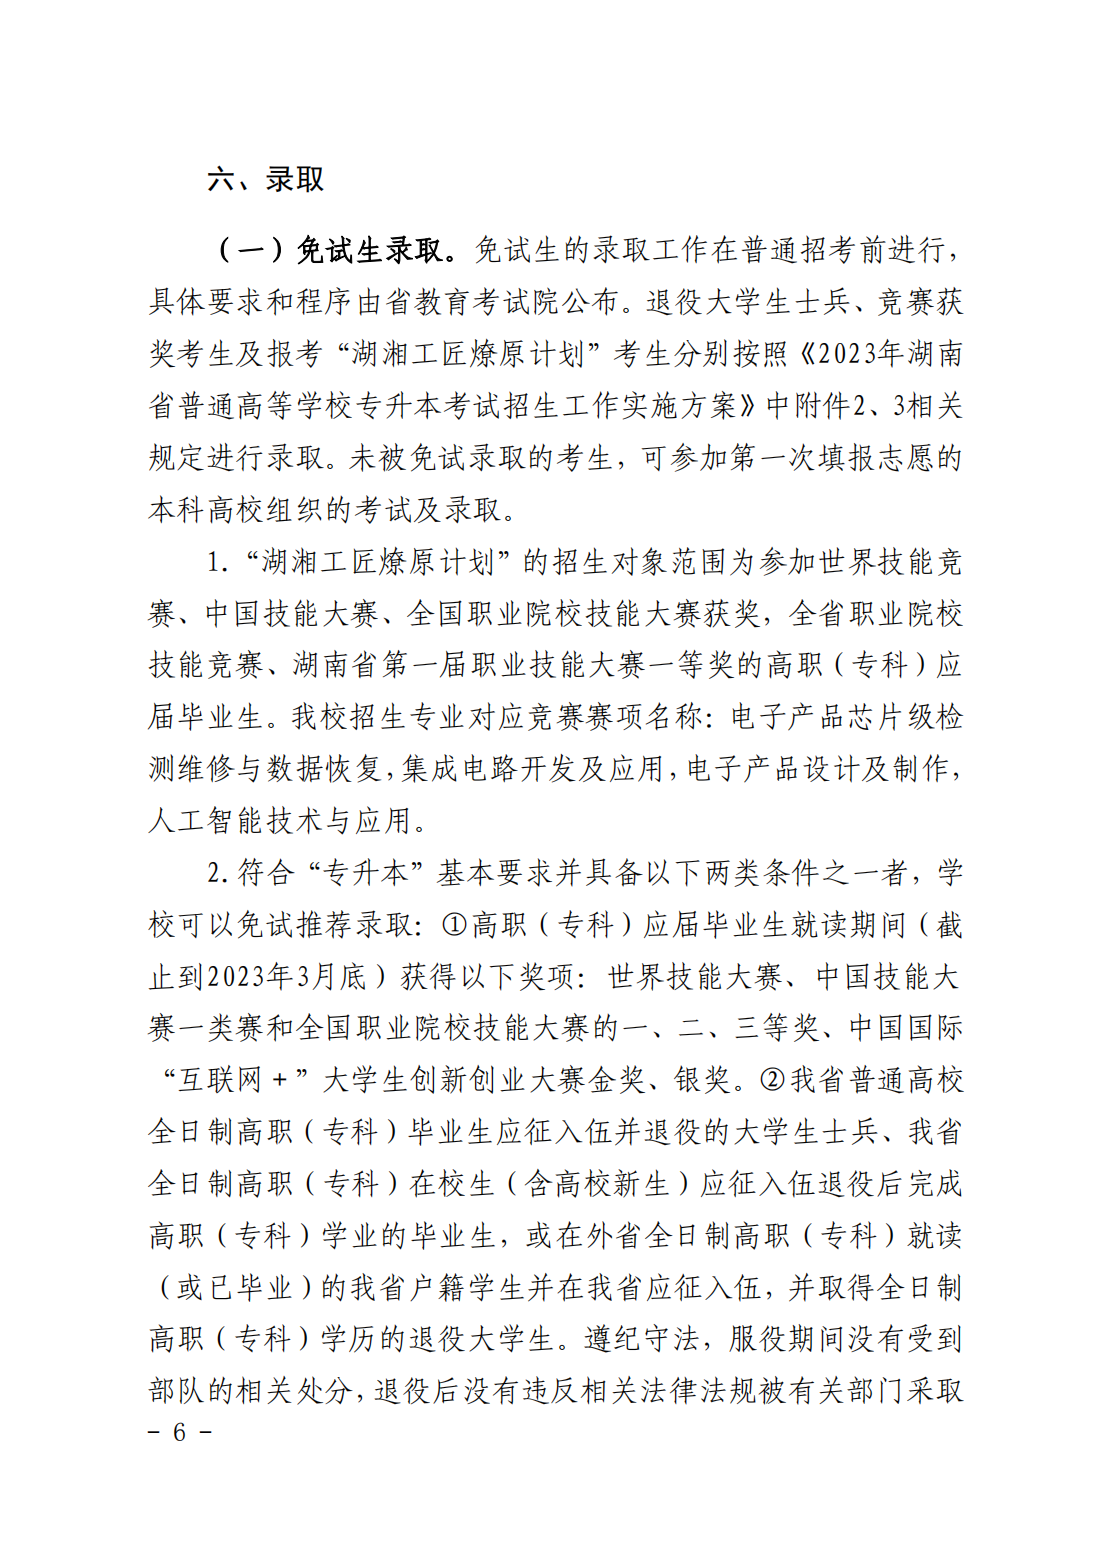 湖南科技大学2023年“专升本”招生章程